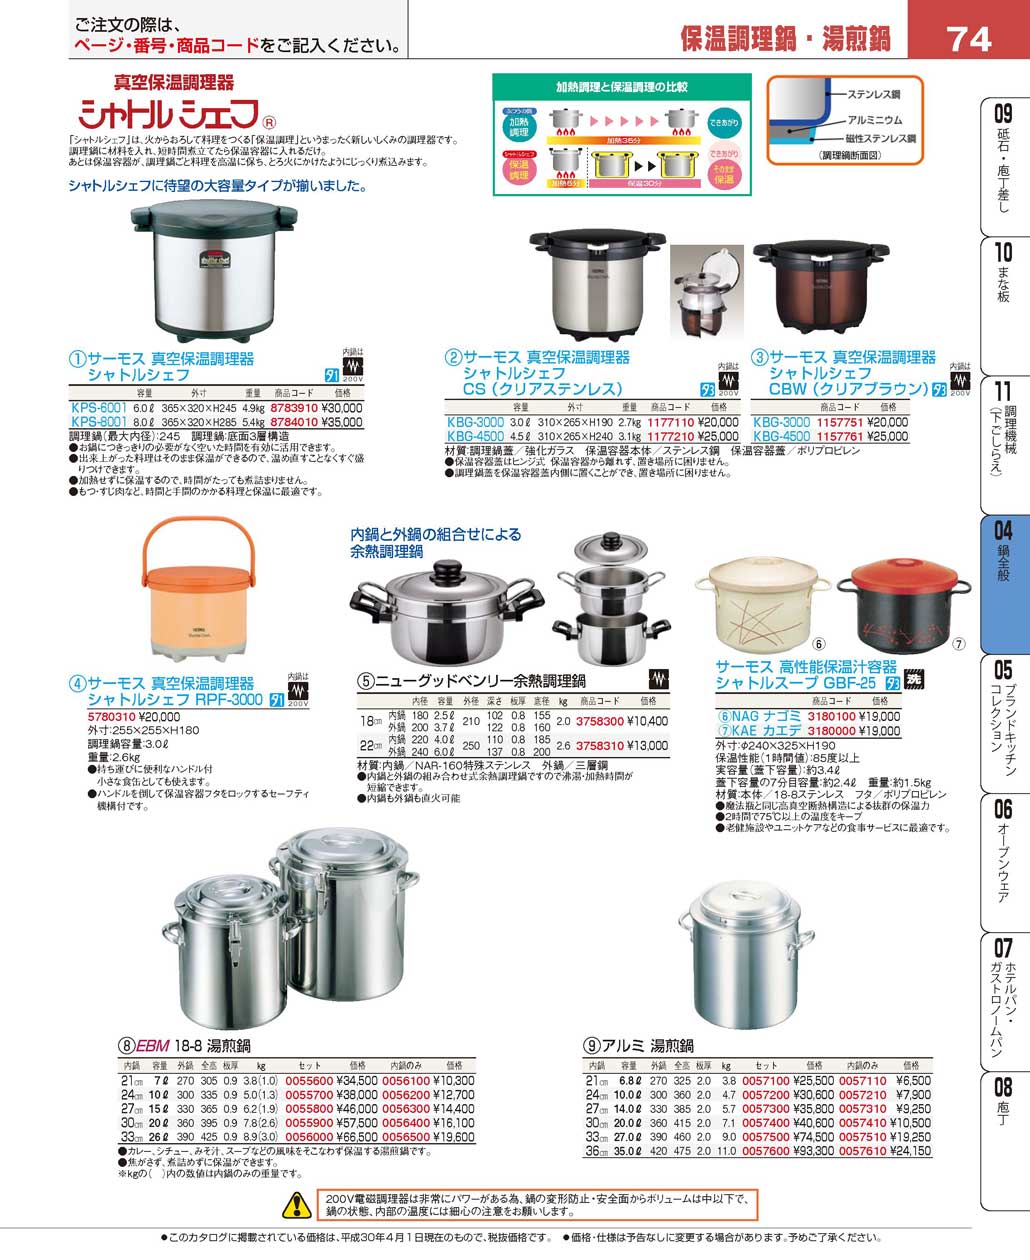 象印(ZOJIRUSHI) 業務用スープジャー専用鍋 TH-N120-J - 1